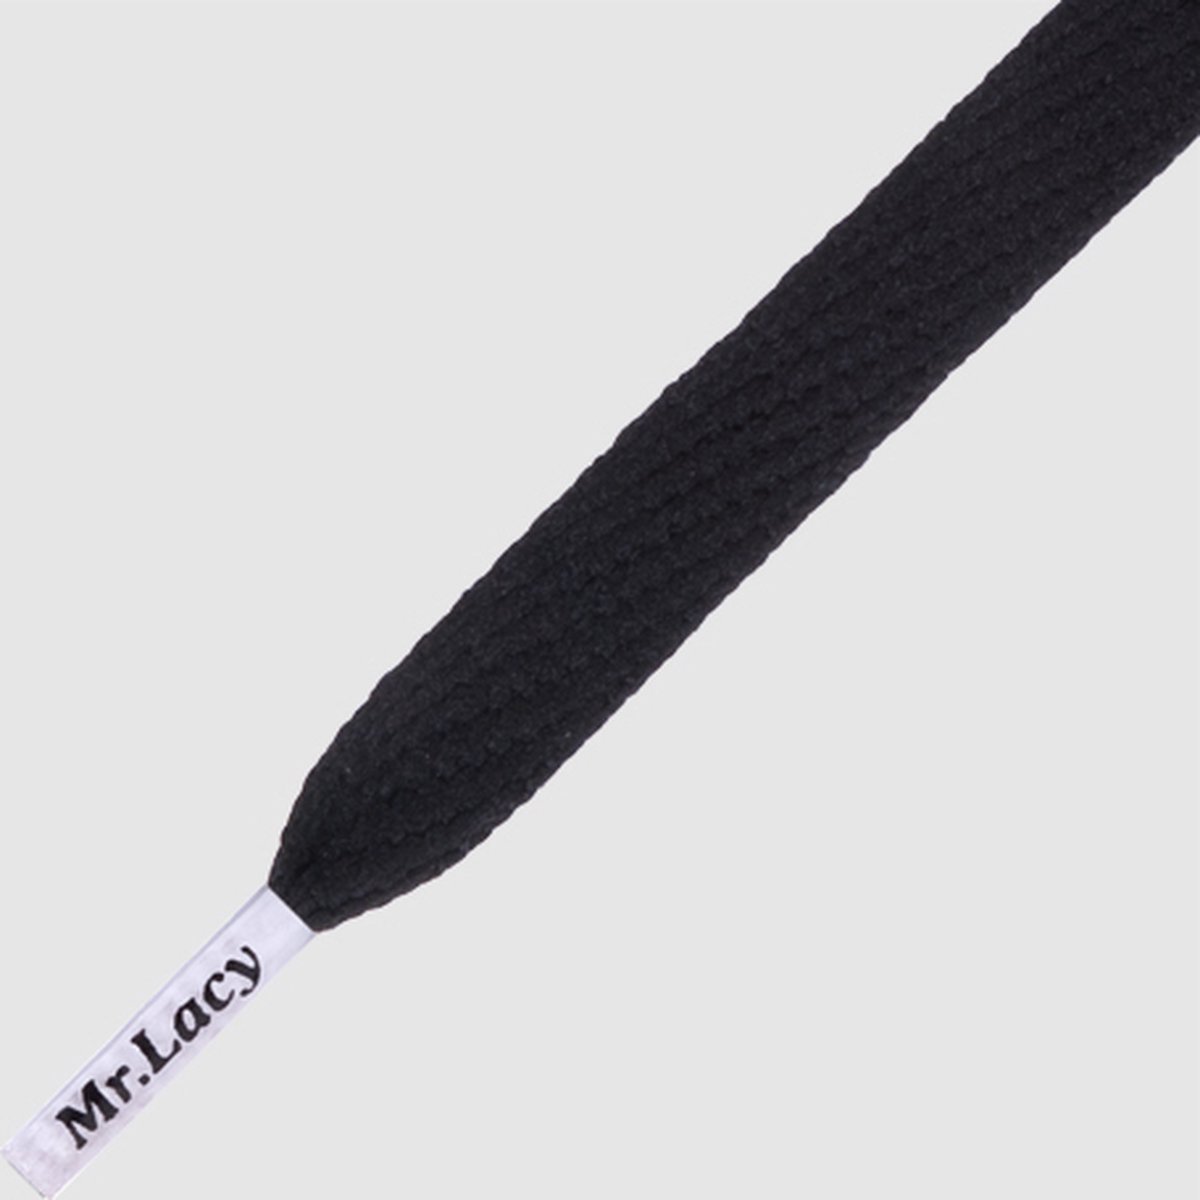 1 paar Flatties schoenveters van MrLacy met gekleurde nestels zwart / wit 130cm sneaker veters